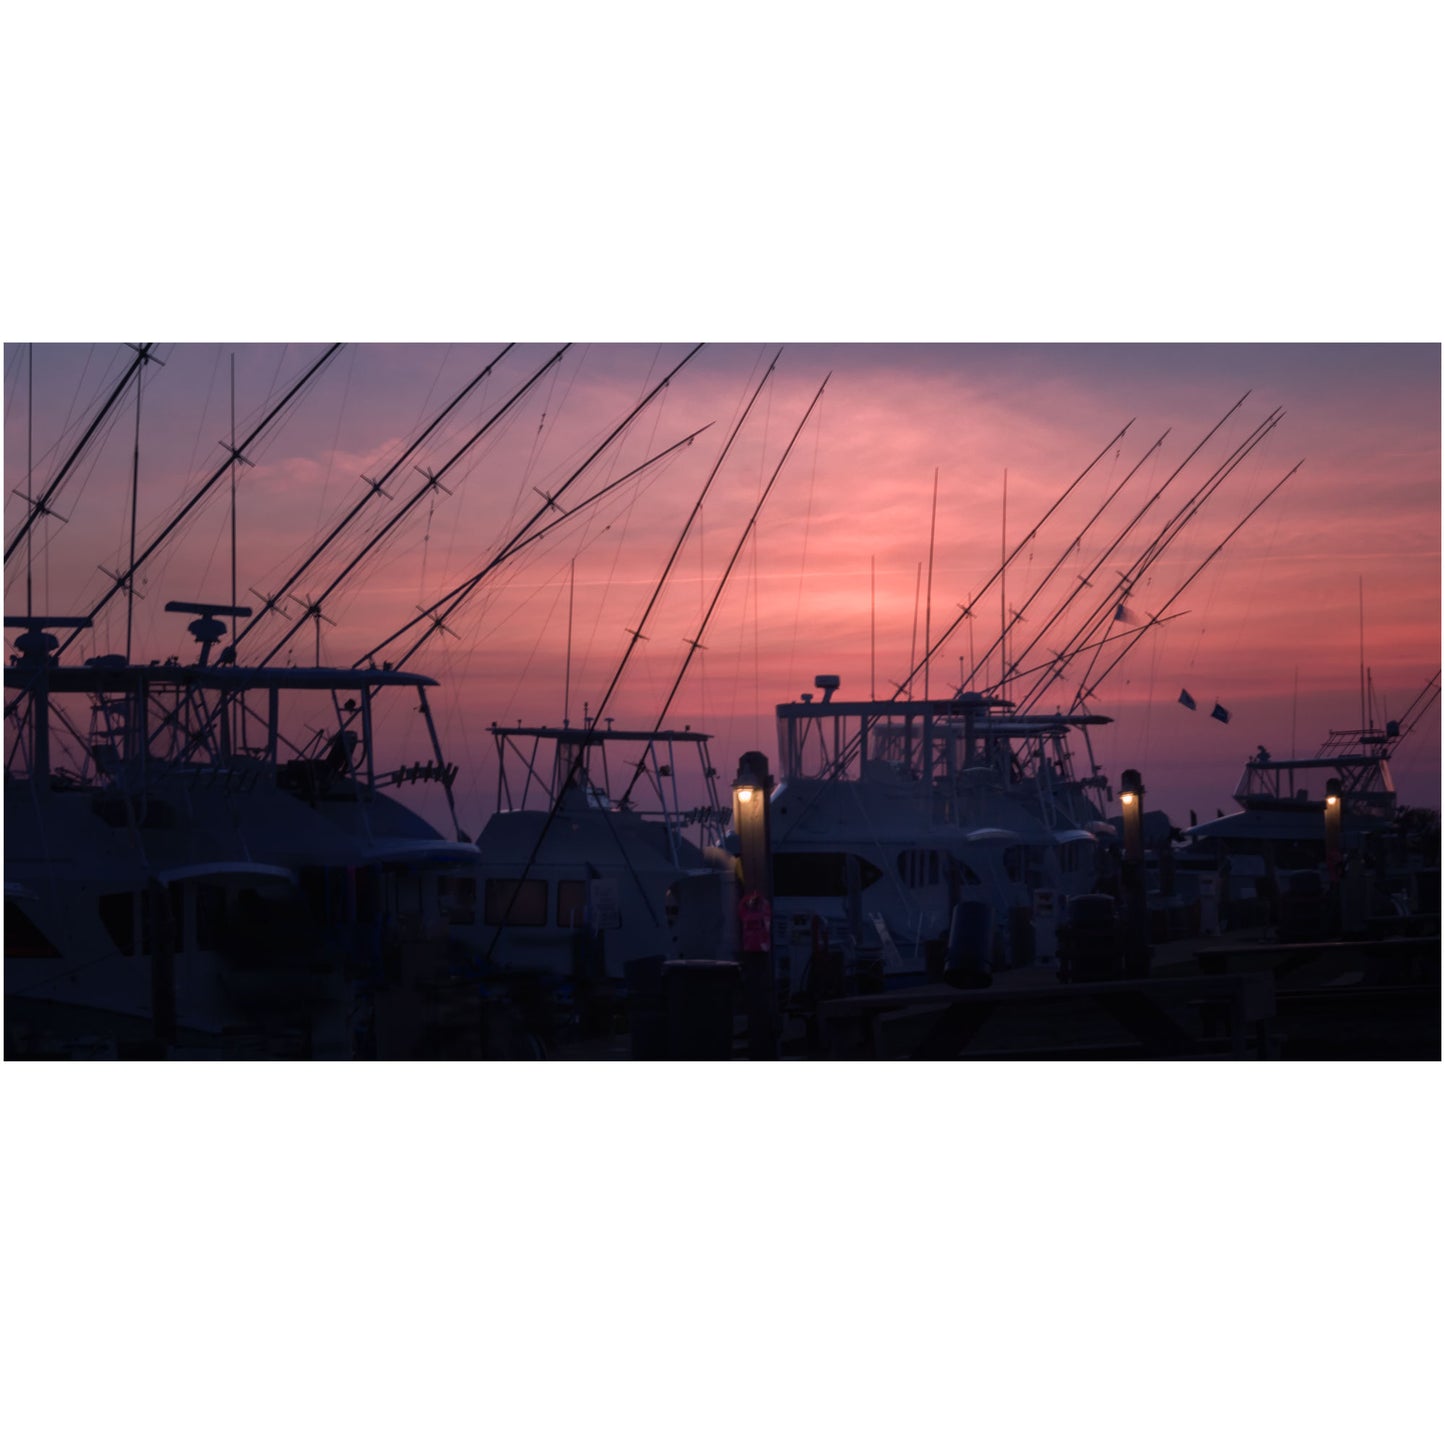 Outer Banks North Carolina wall art print featuring docked fishing boats at sunset